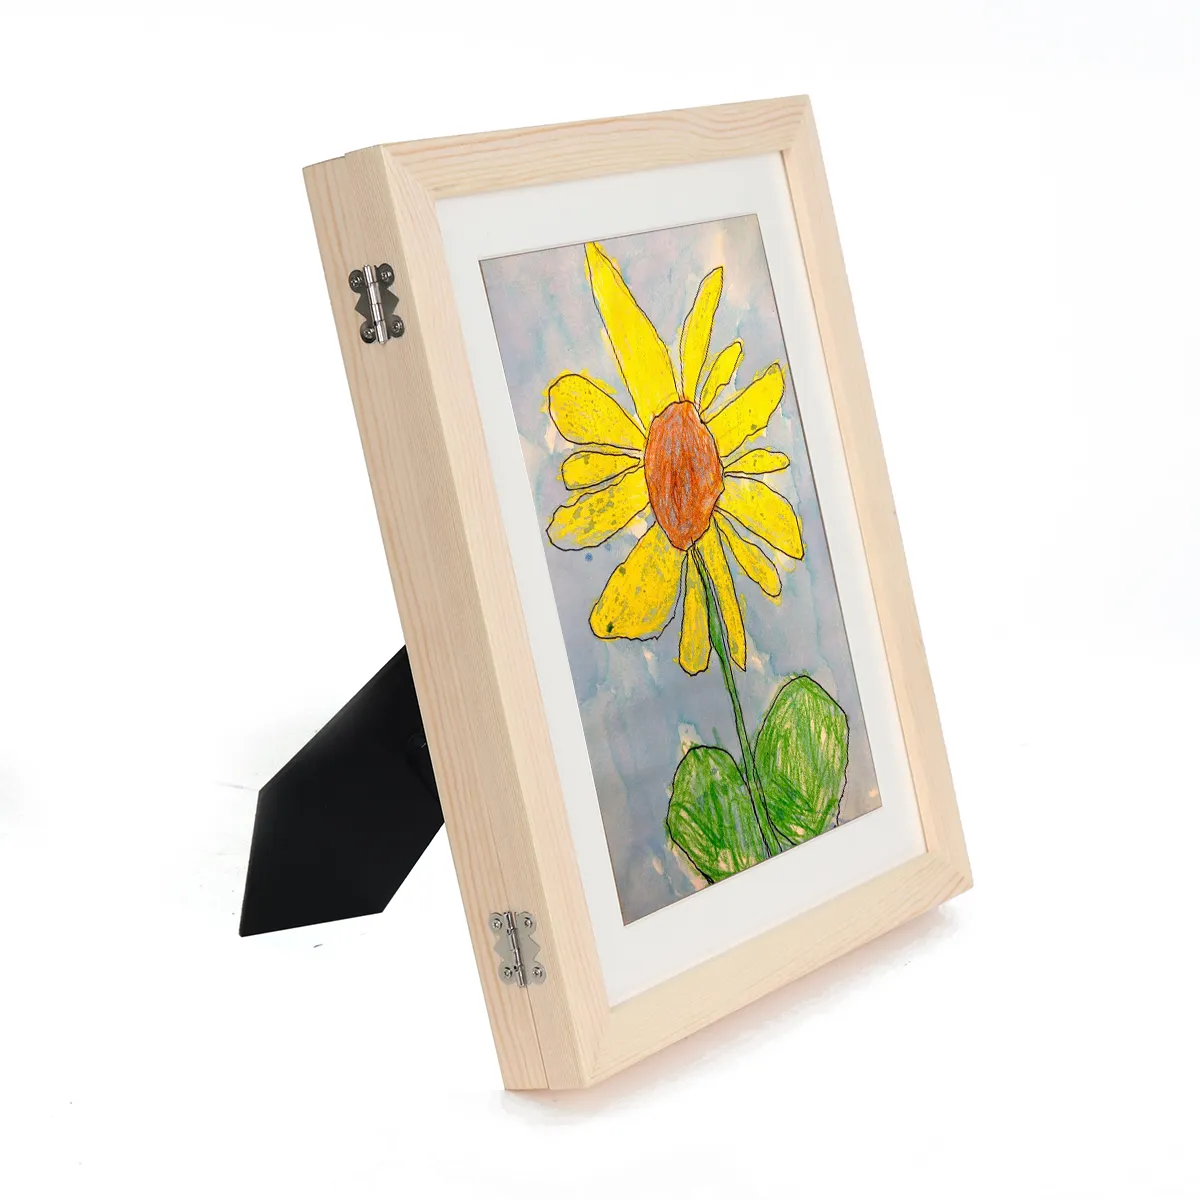 ترقية إطار فني مخصص للأطفال عمل فني خشبي إطارات فنية للأطفال صور يدوية إطار رسم للأطفال